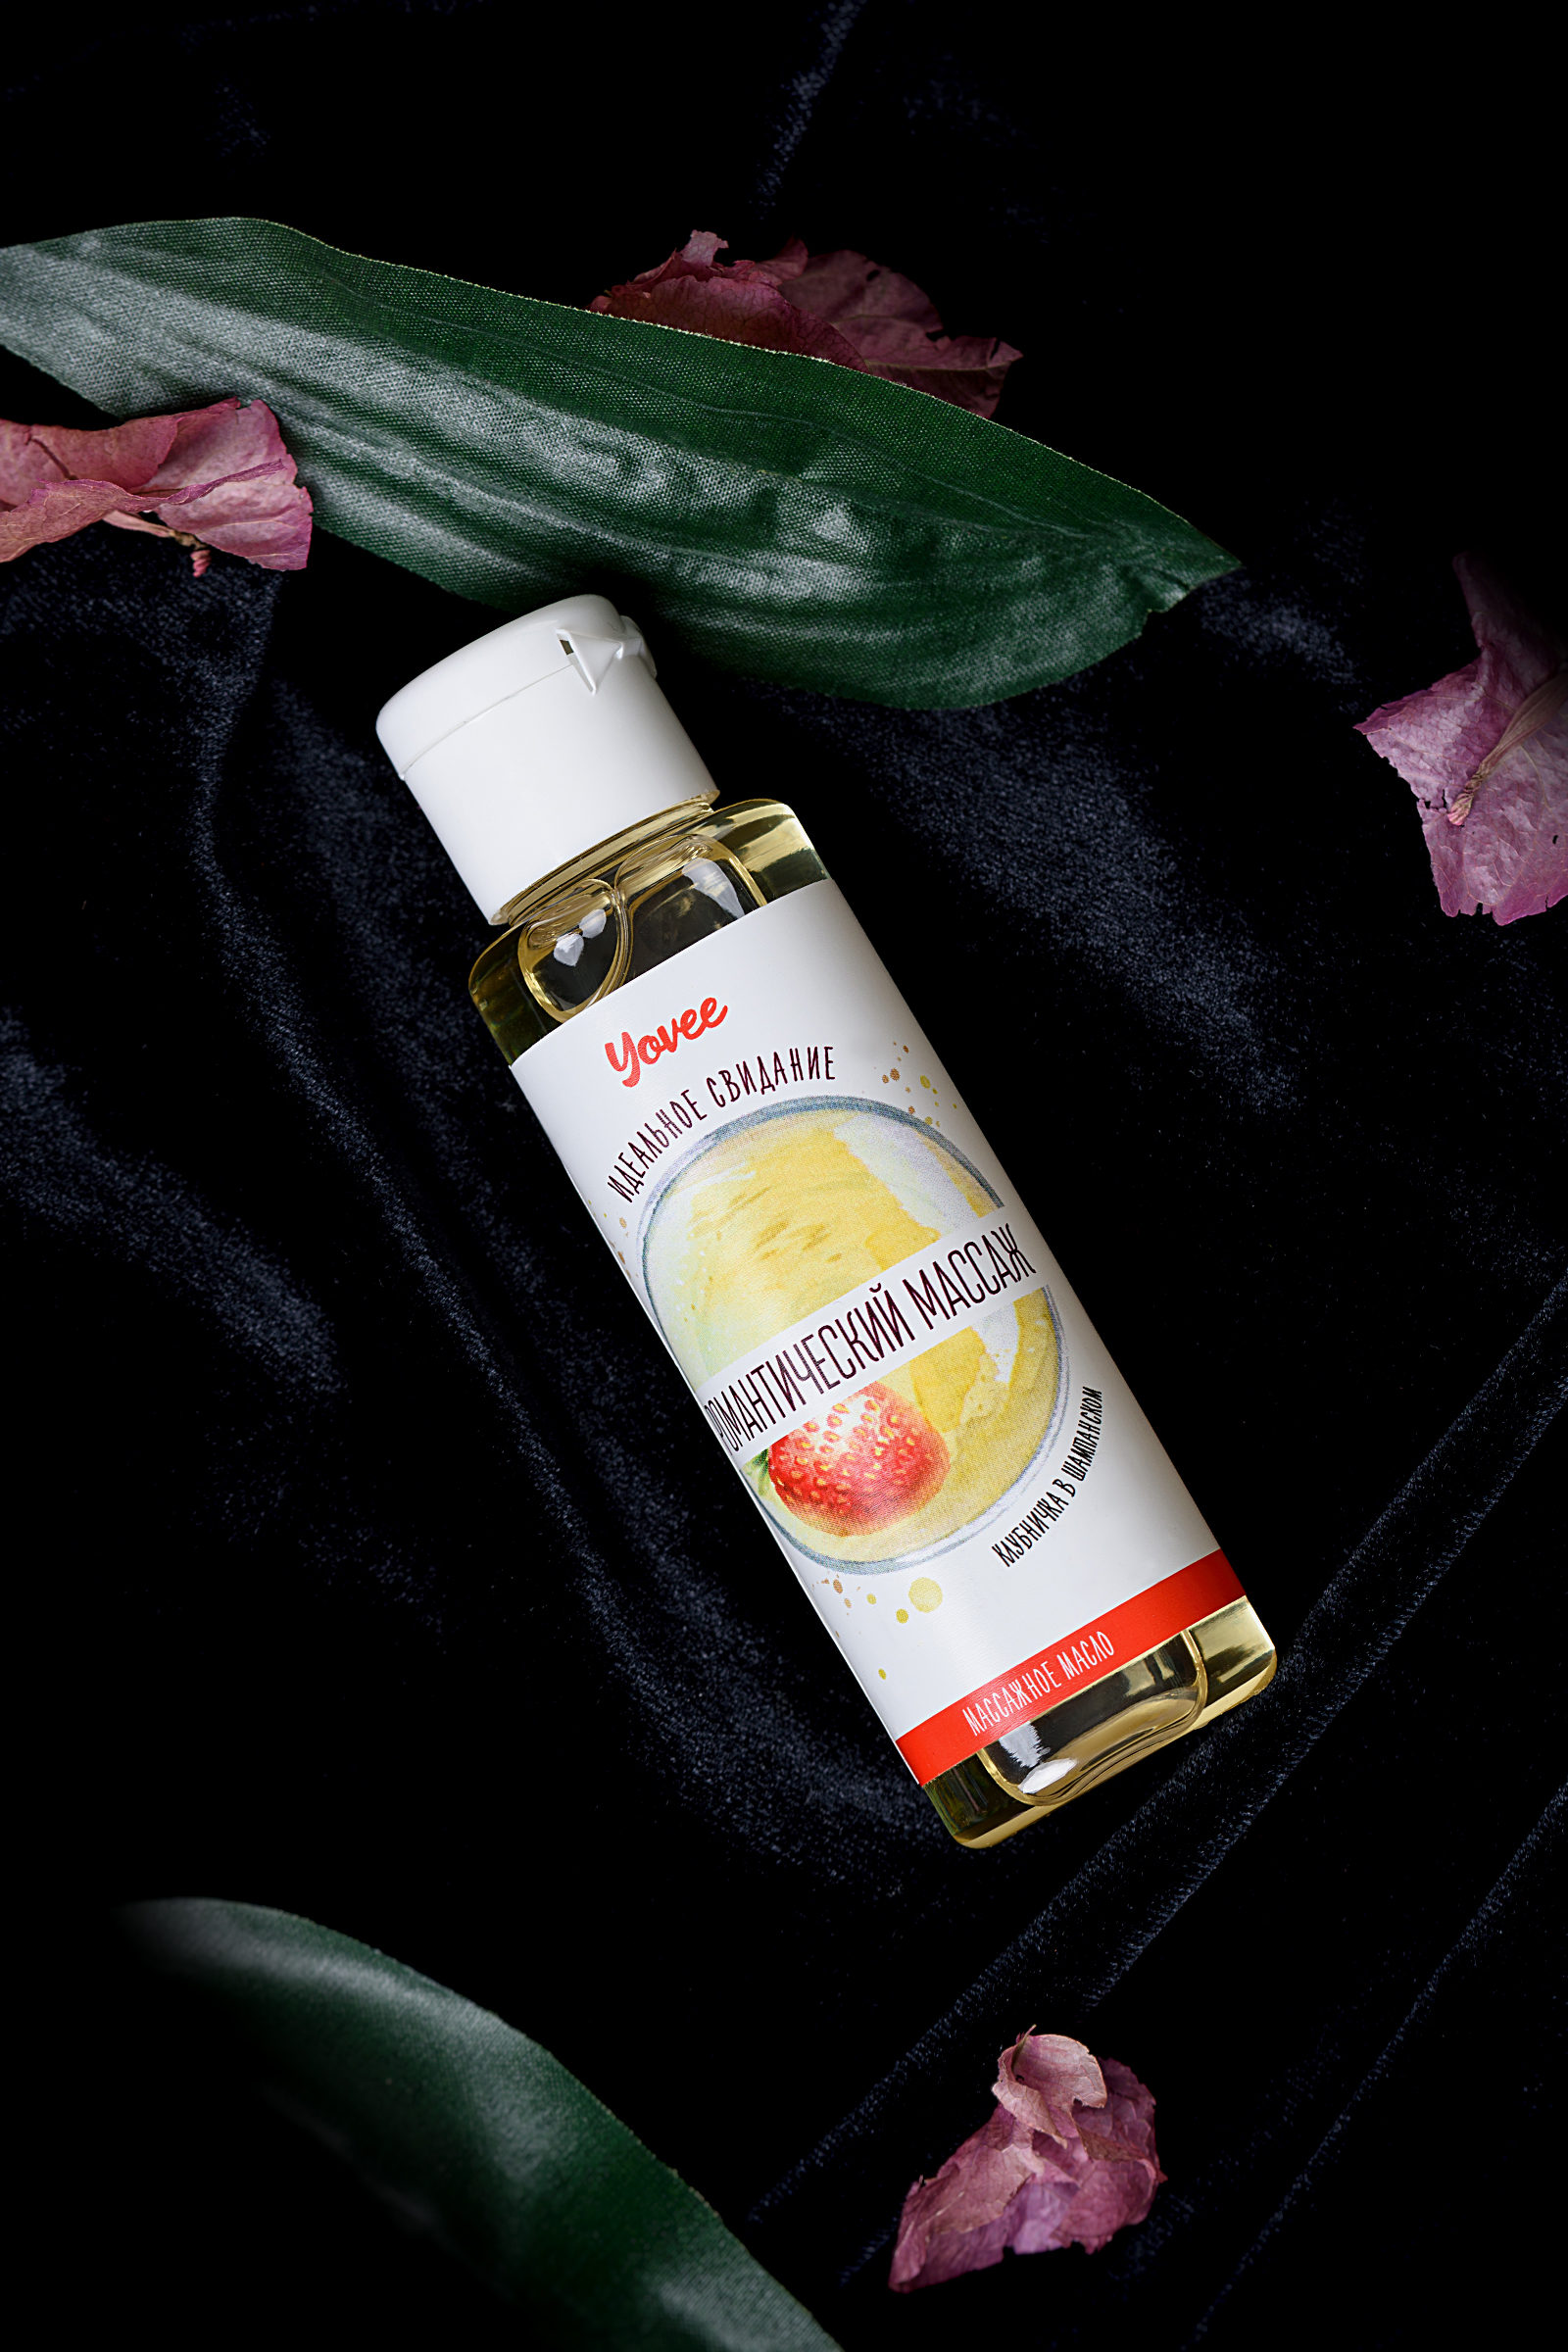 Масло для массажа Yovee «Романтический массаж», с ароматом клубники и шампанского, 50 мл. Фото N9